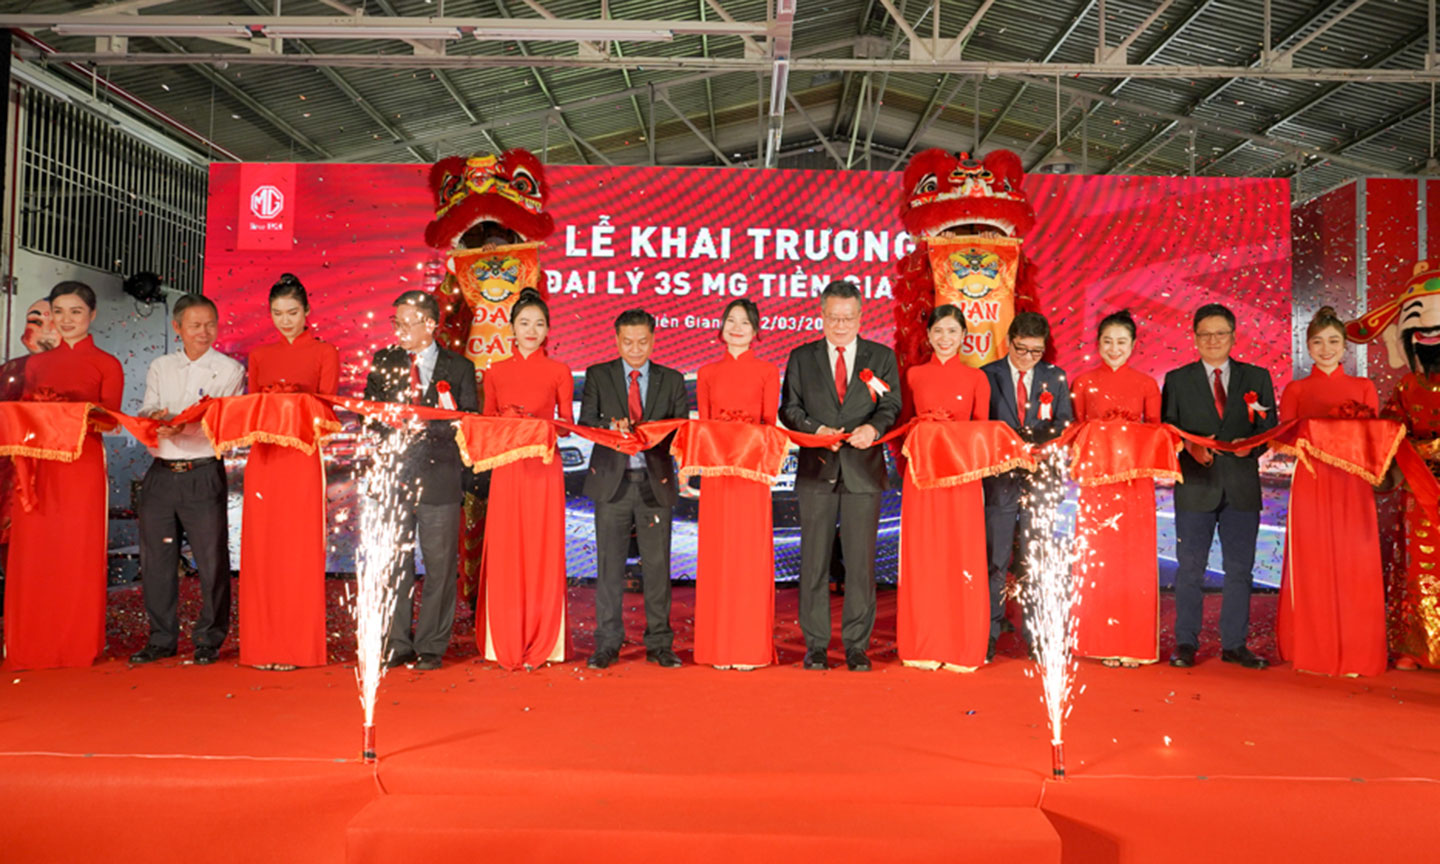 Ngày 12 tháng 03 năm 2022, tại Showroom MG Tiền Giang đã long trọng tổ chức “Lễ Khai Trương Đại Lý 3S MG Tiền Giang”.